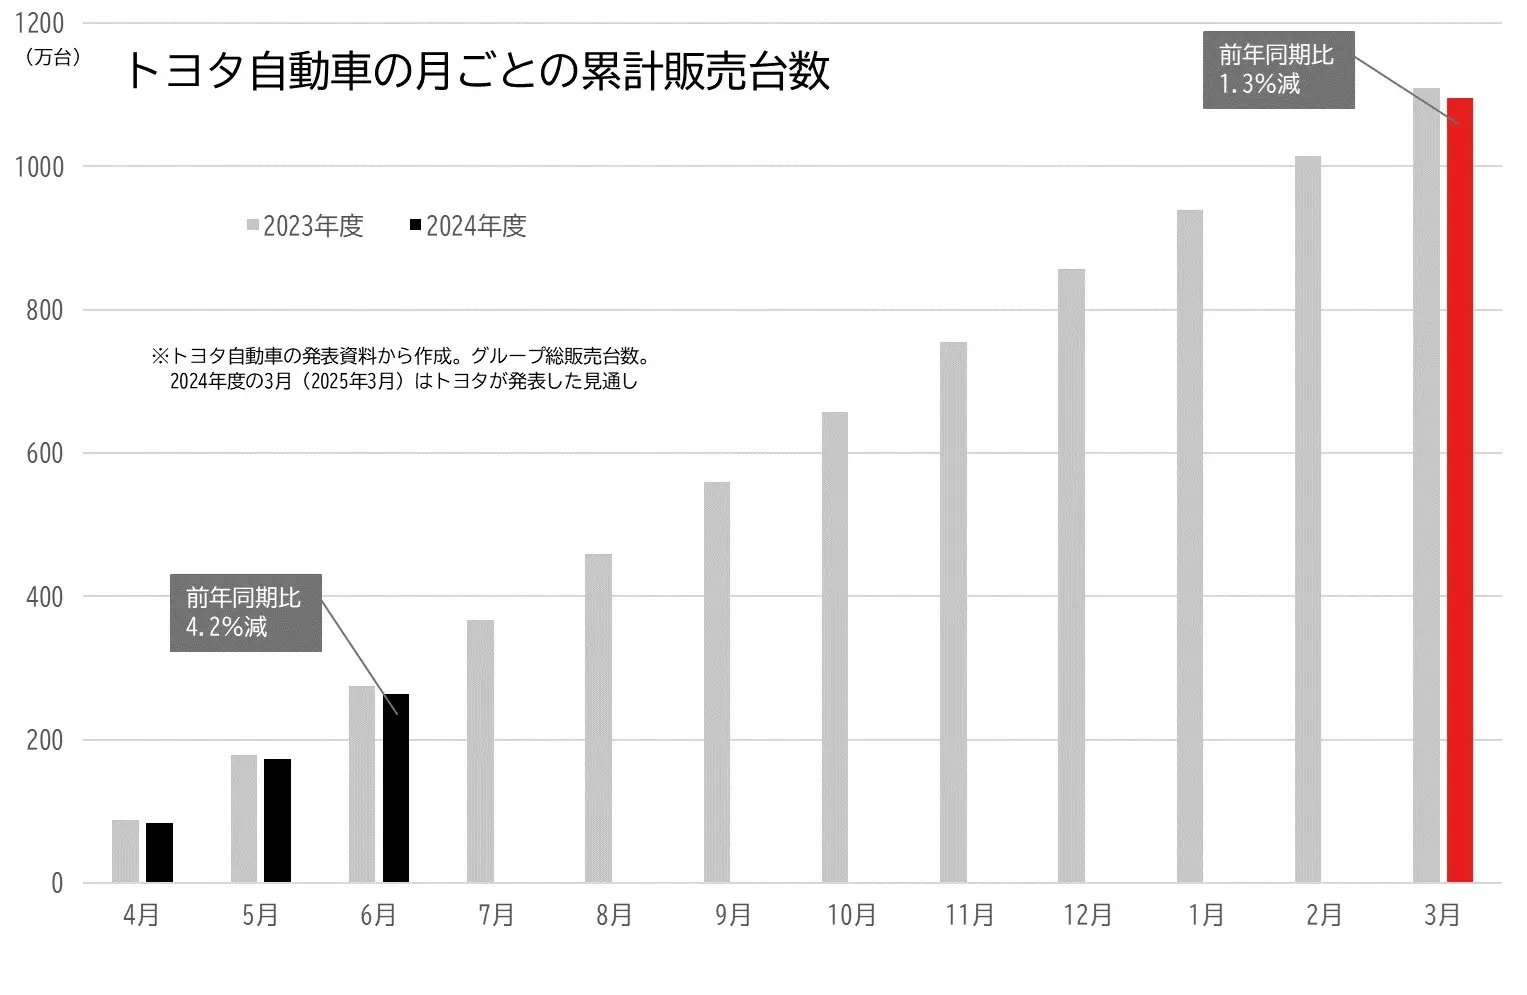 トヨタの月別の累計販売台数の推移のグラフ